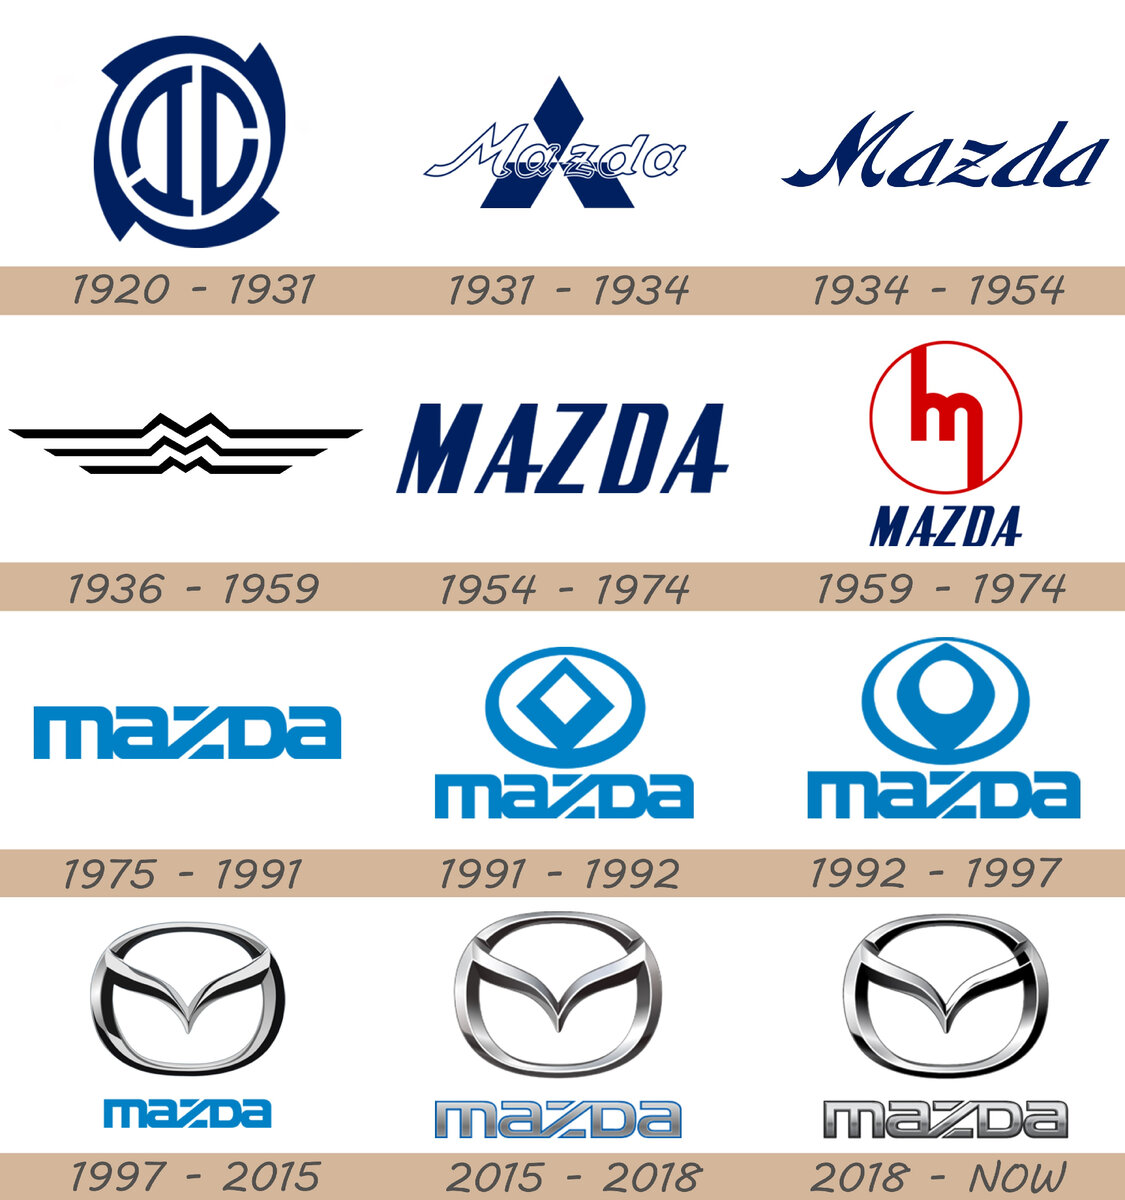    MAZDA  Mazda100ries  